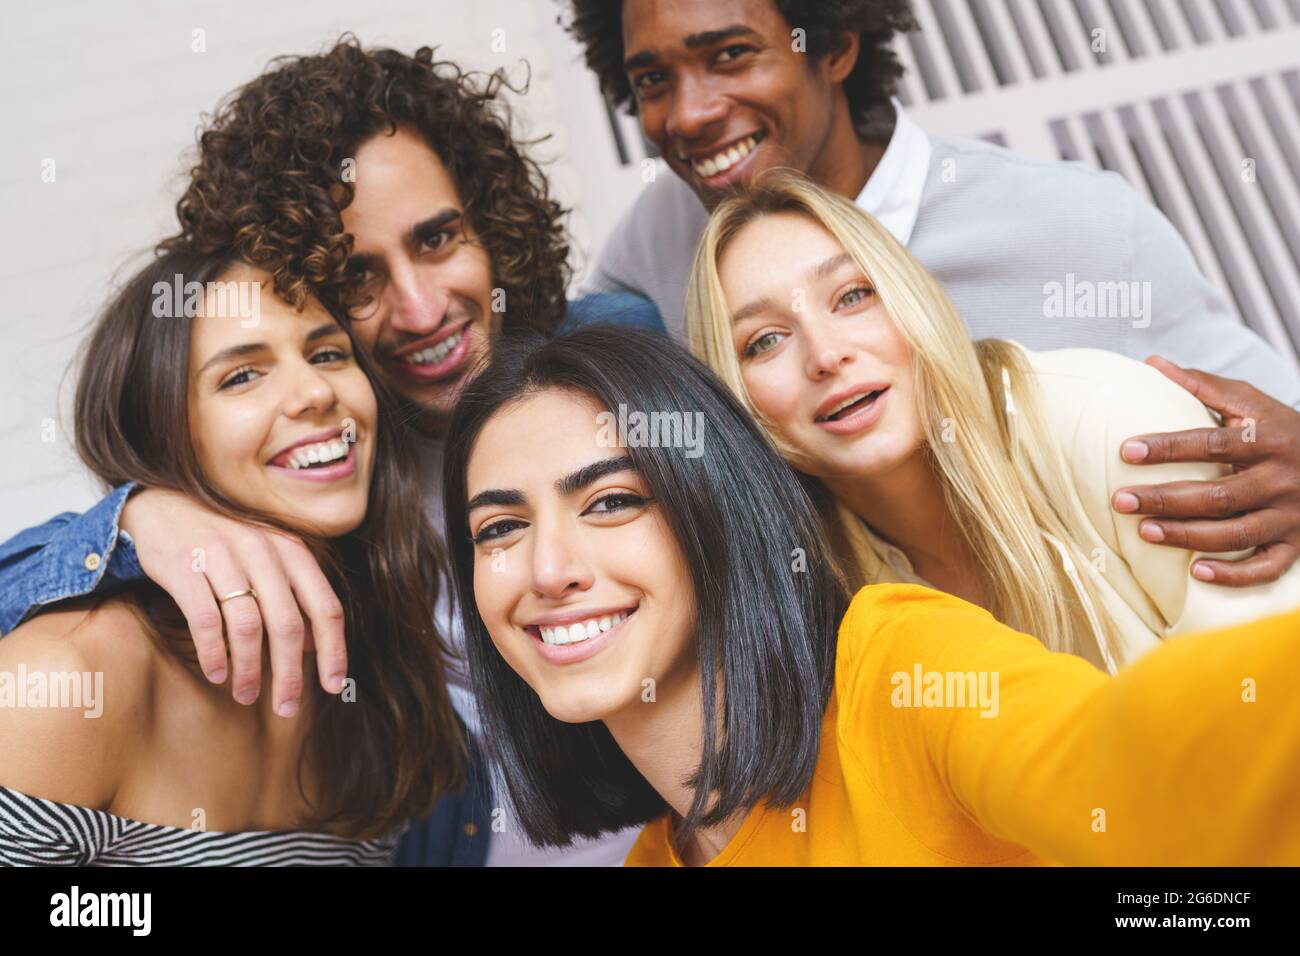 Gruppo multietnico di amici che prendono un selfie insieme mentre si divertono all'aria aperta. Foto Stock